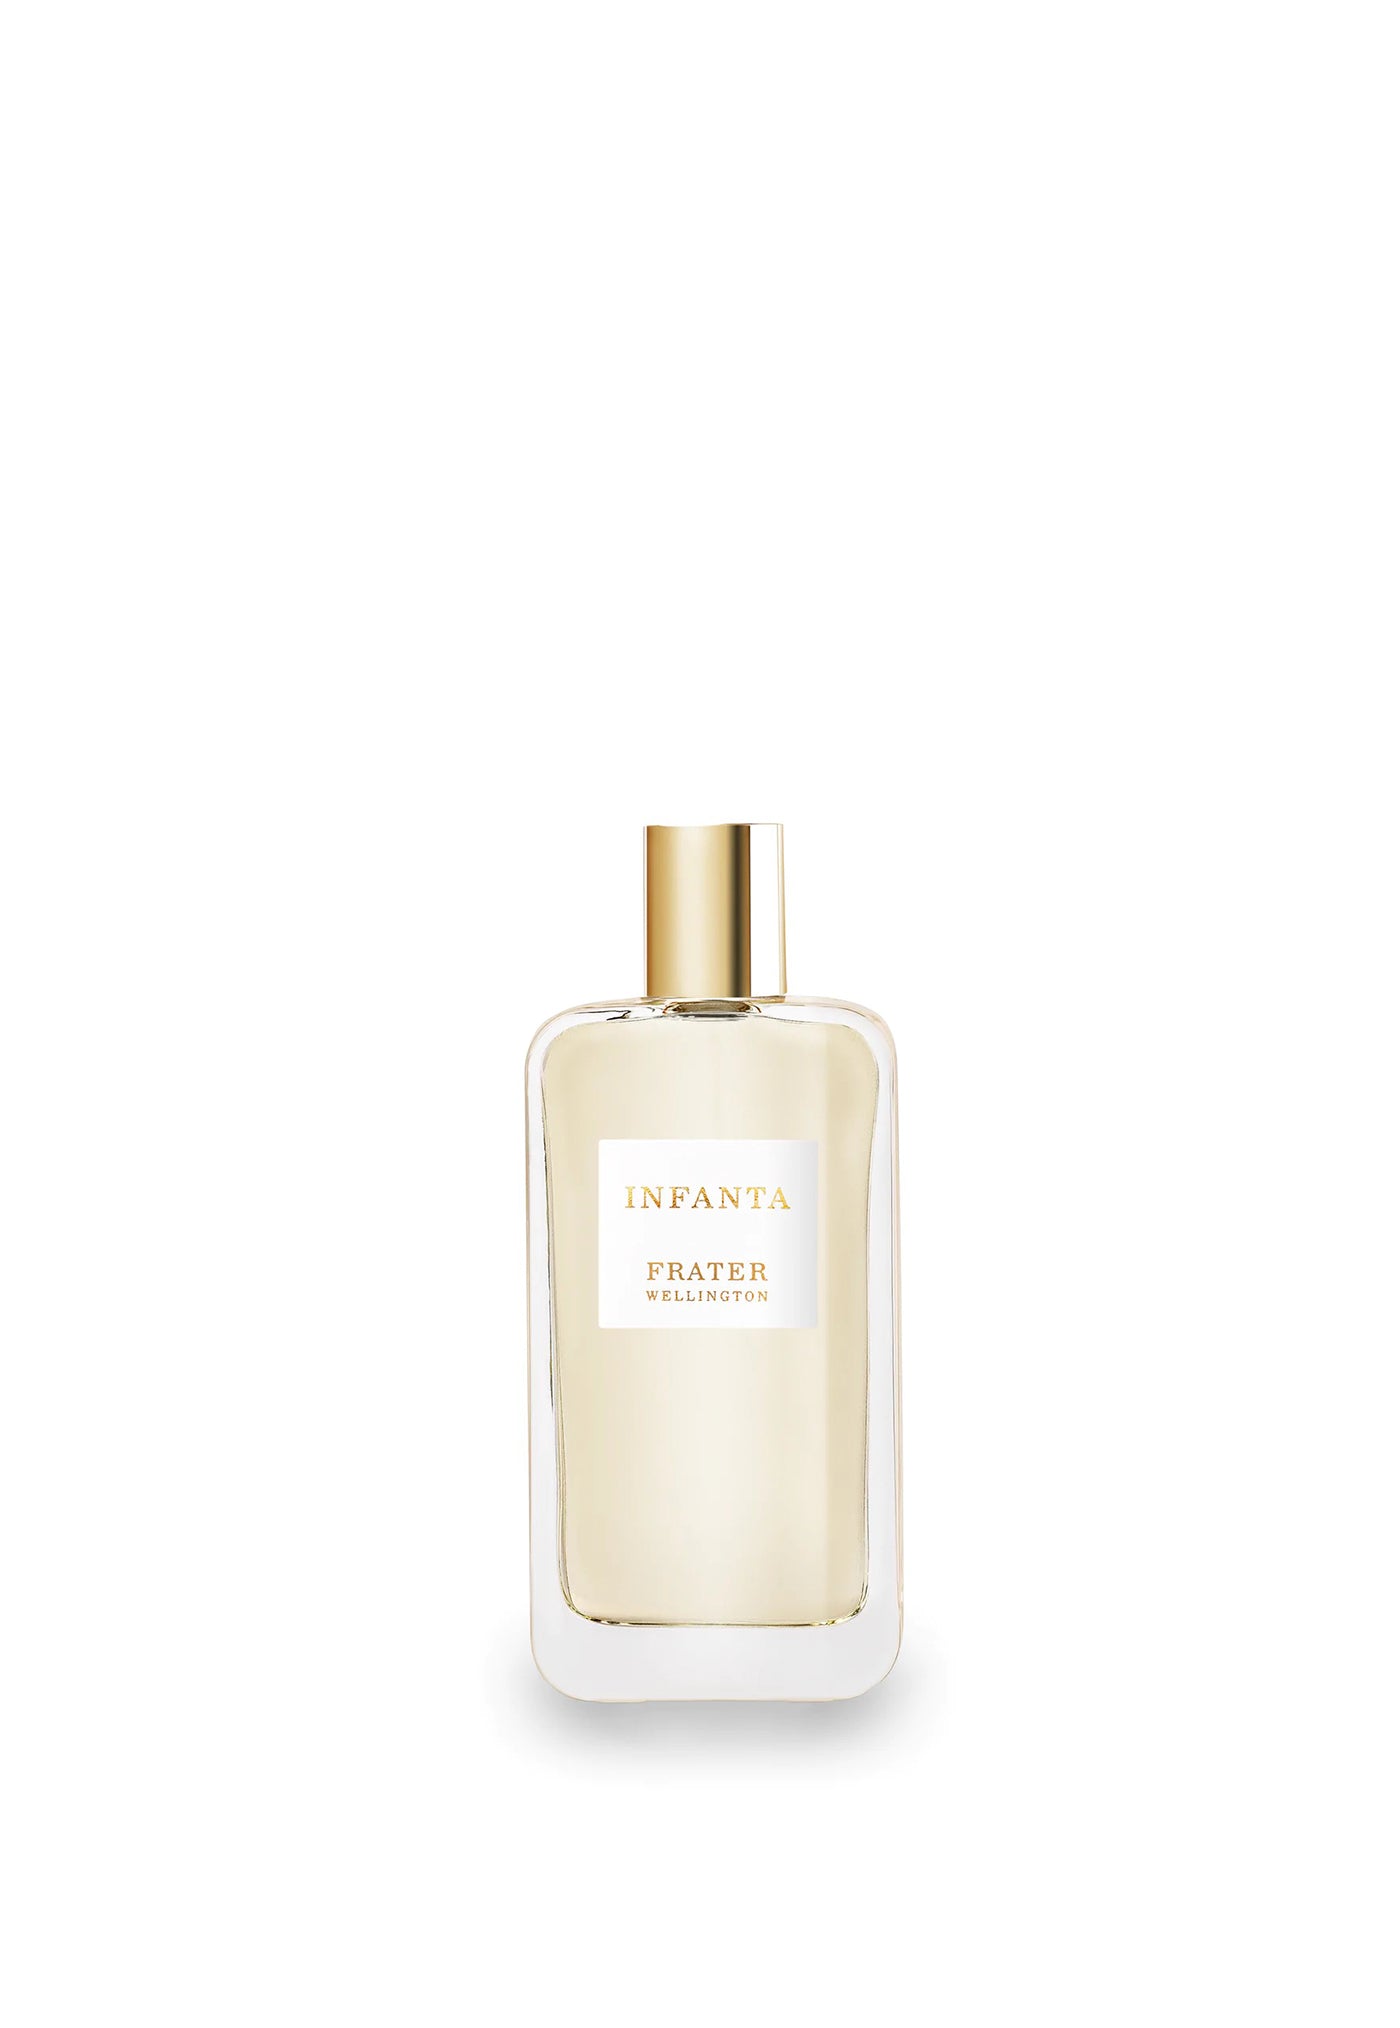 Infanta Parfum Spray sold by Angel Divine